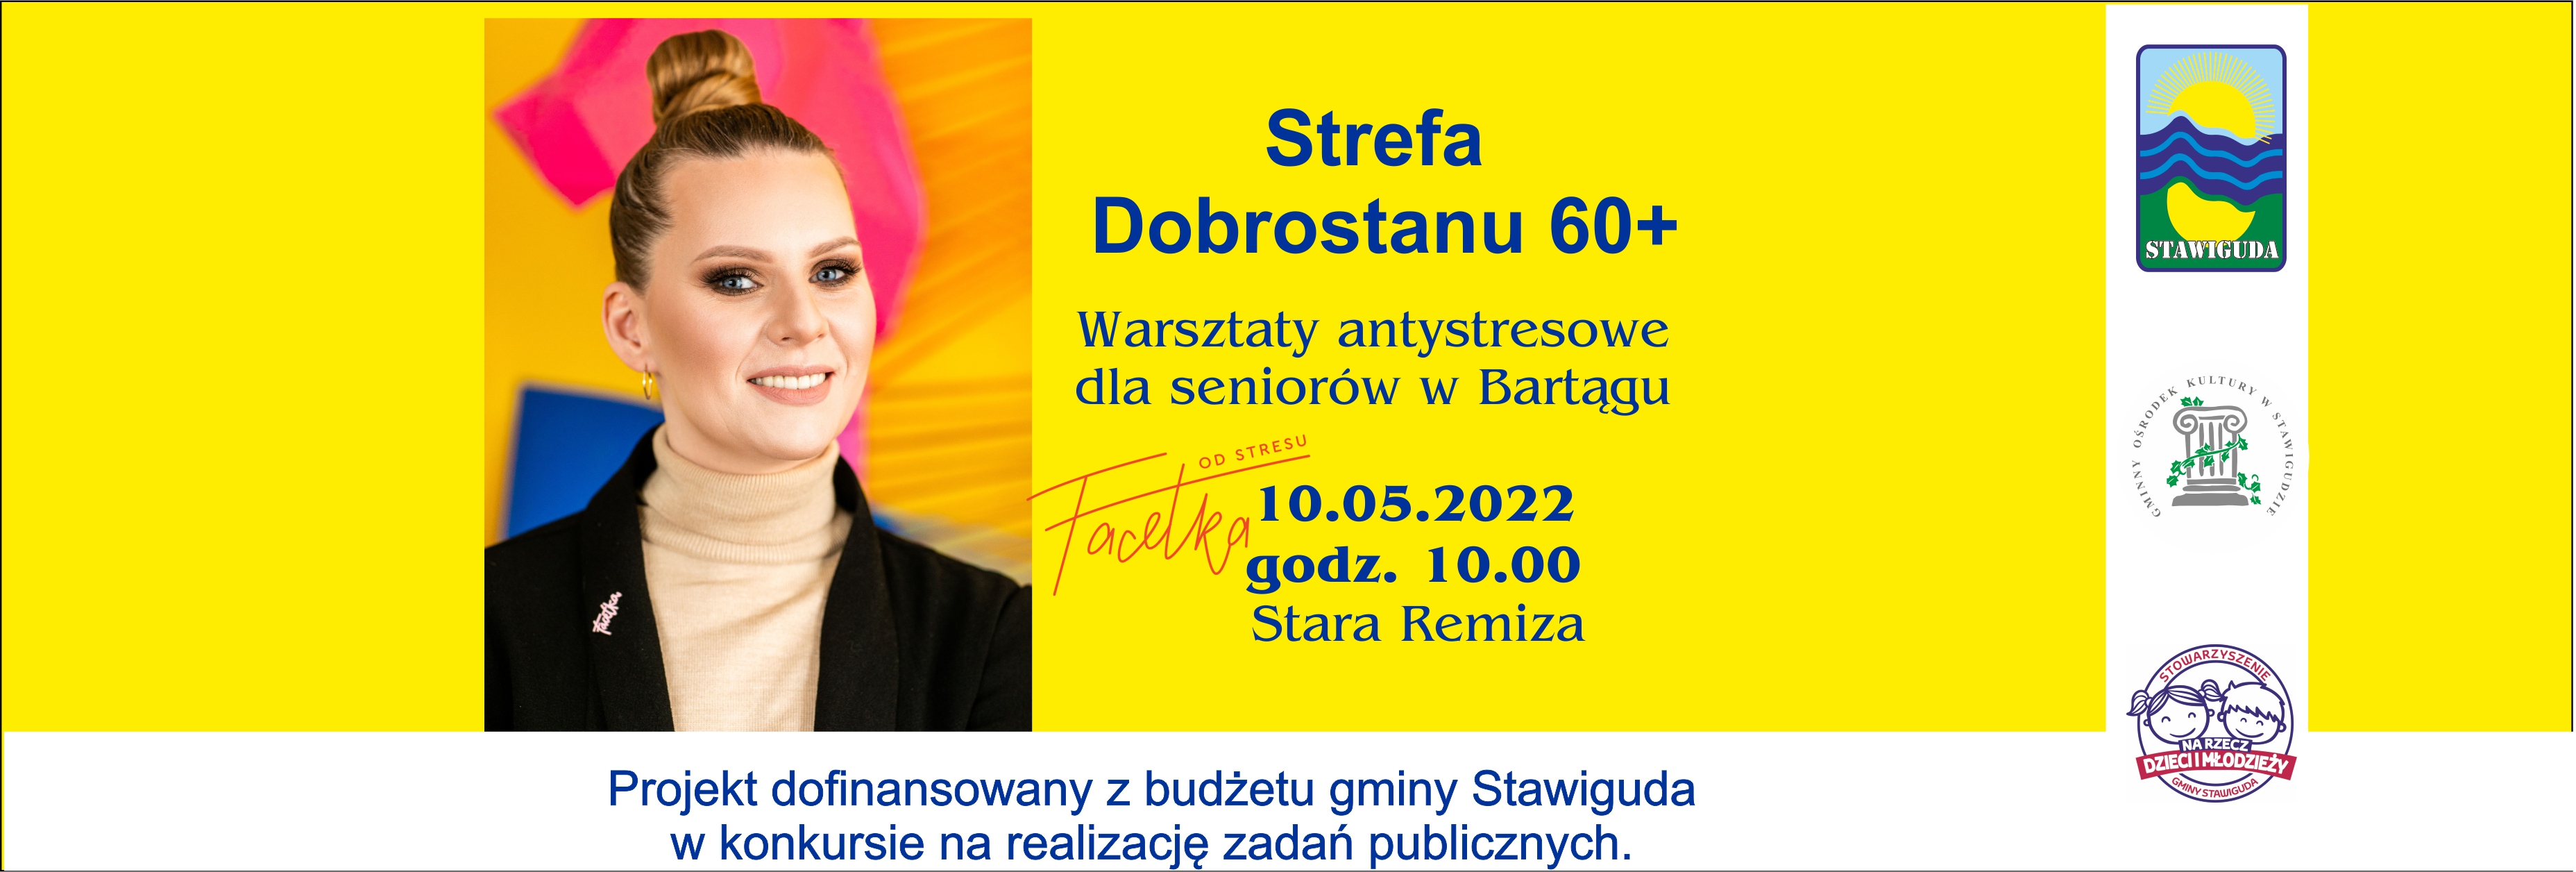 Spotkanie antystresowe dla seniorów w Bartągu